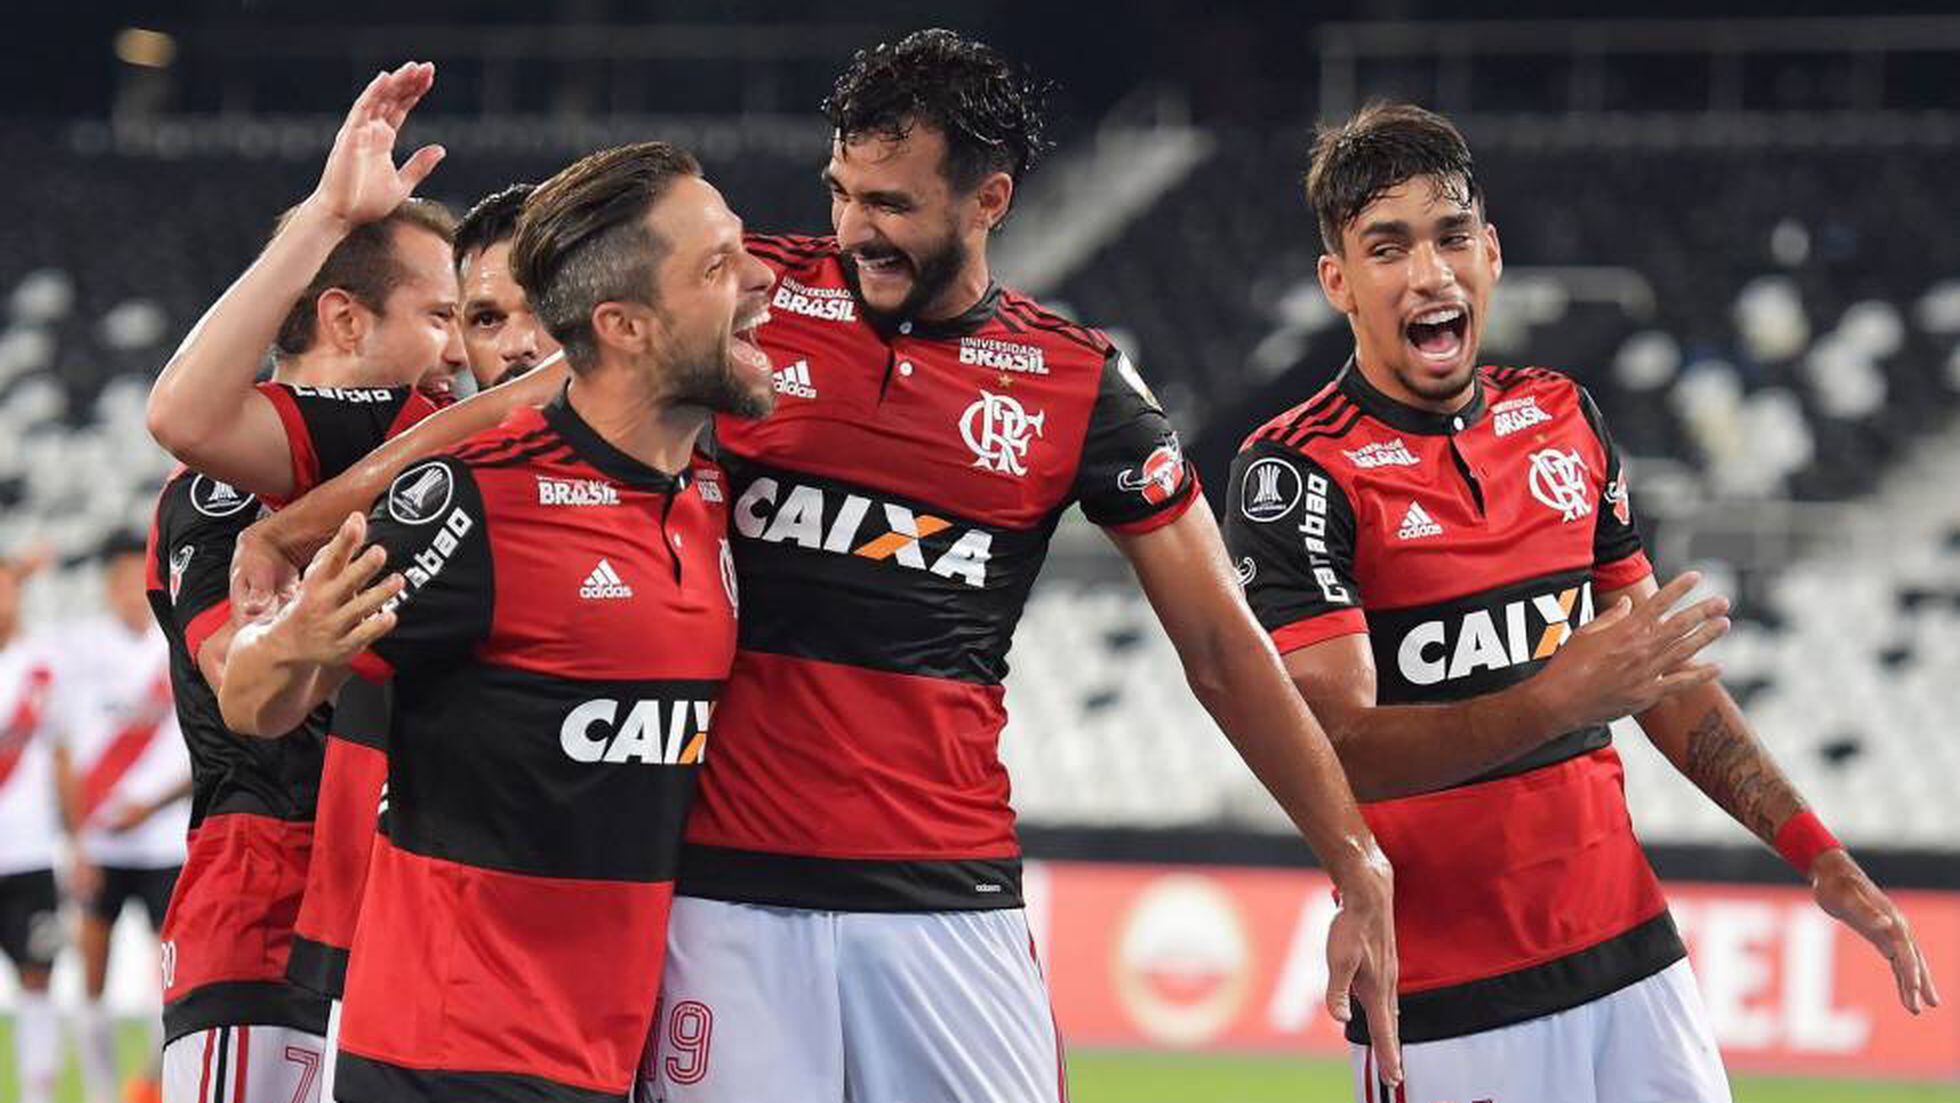 ATENÇÃO: O jogo Flamengo x - Clube de Regatas do Flamengo